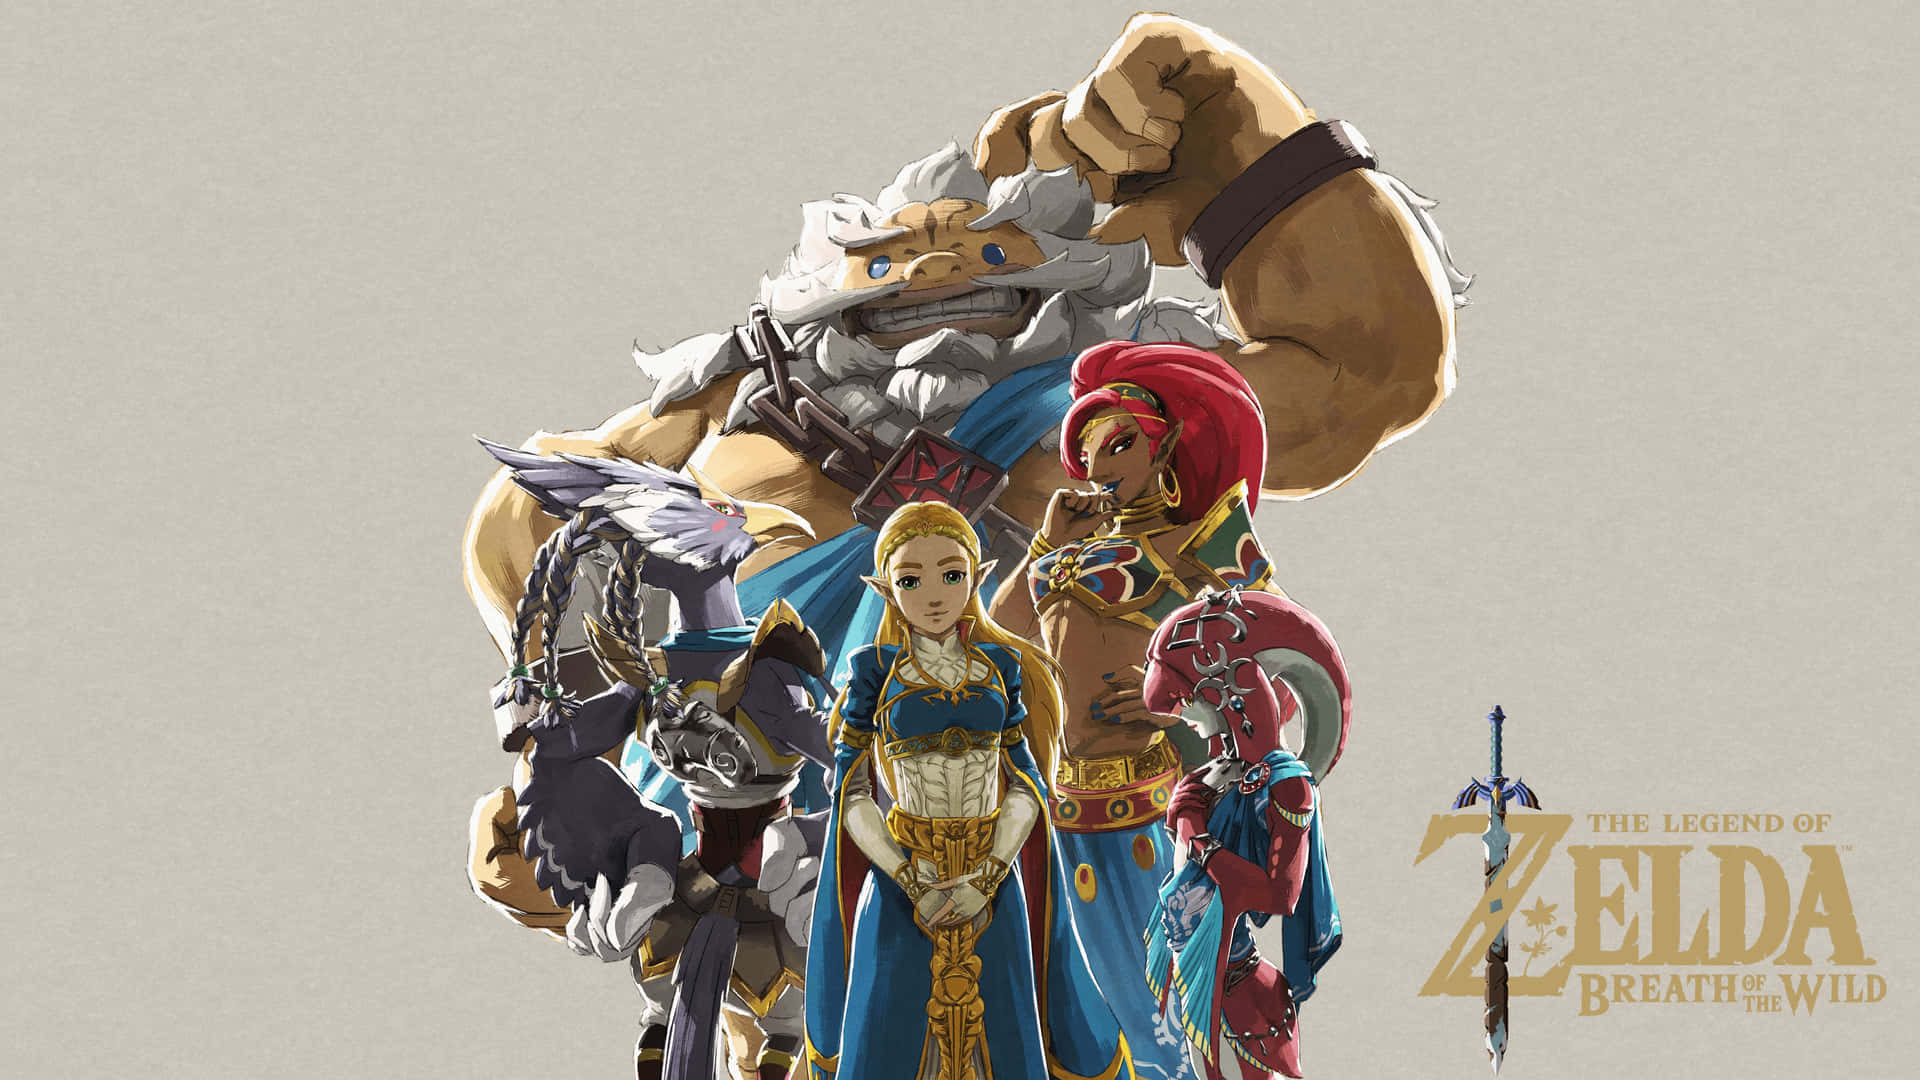 Daruk from The Legend of Zelda in action Wallpaper